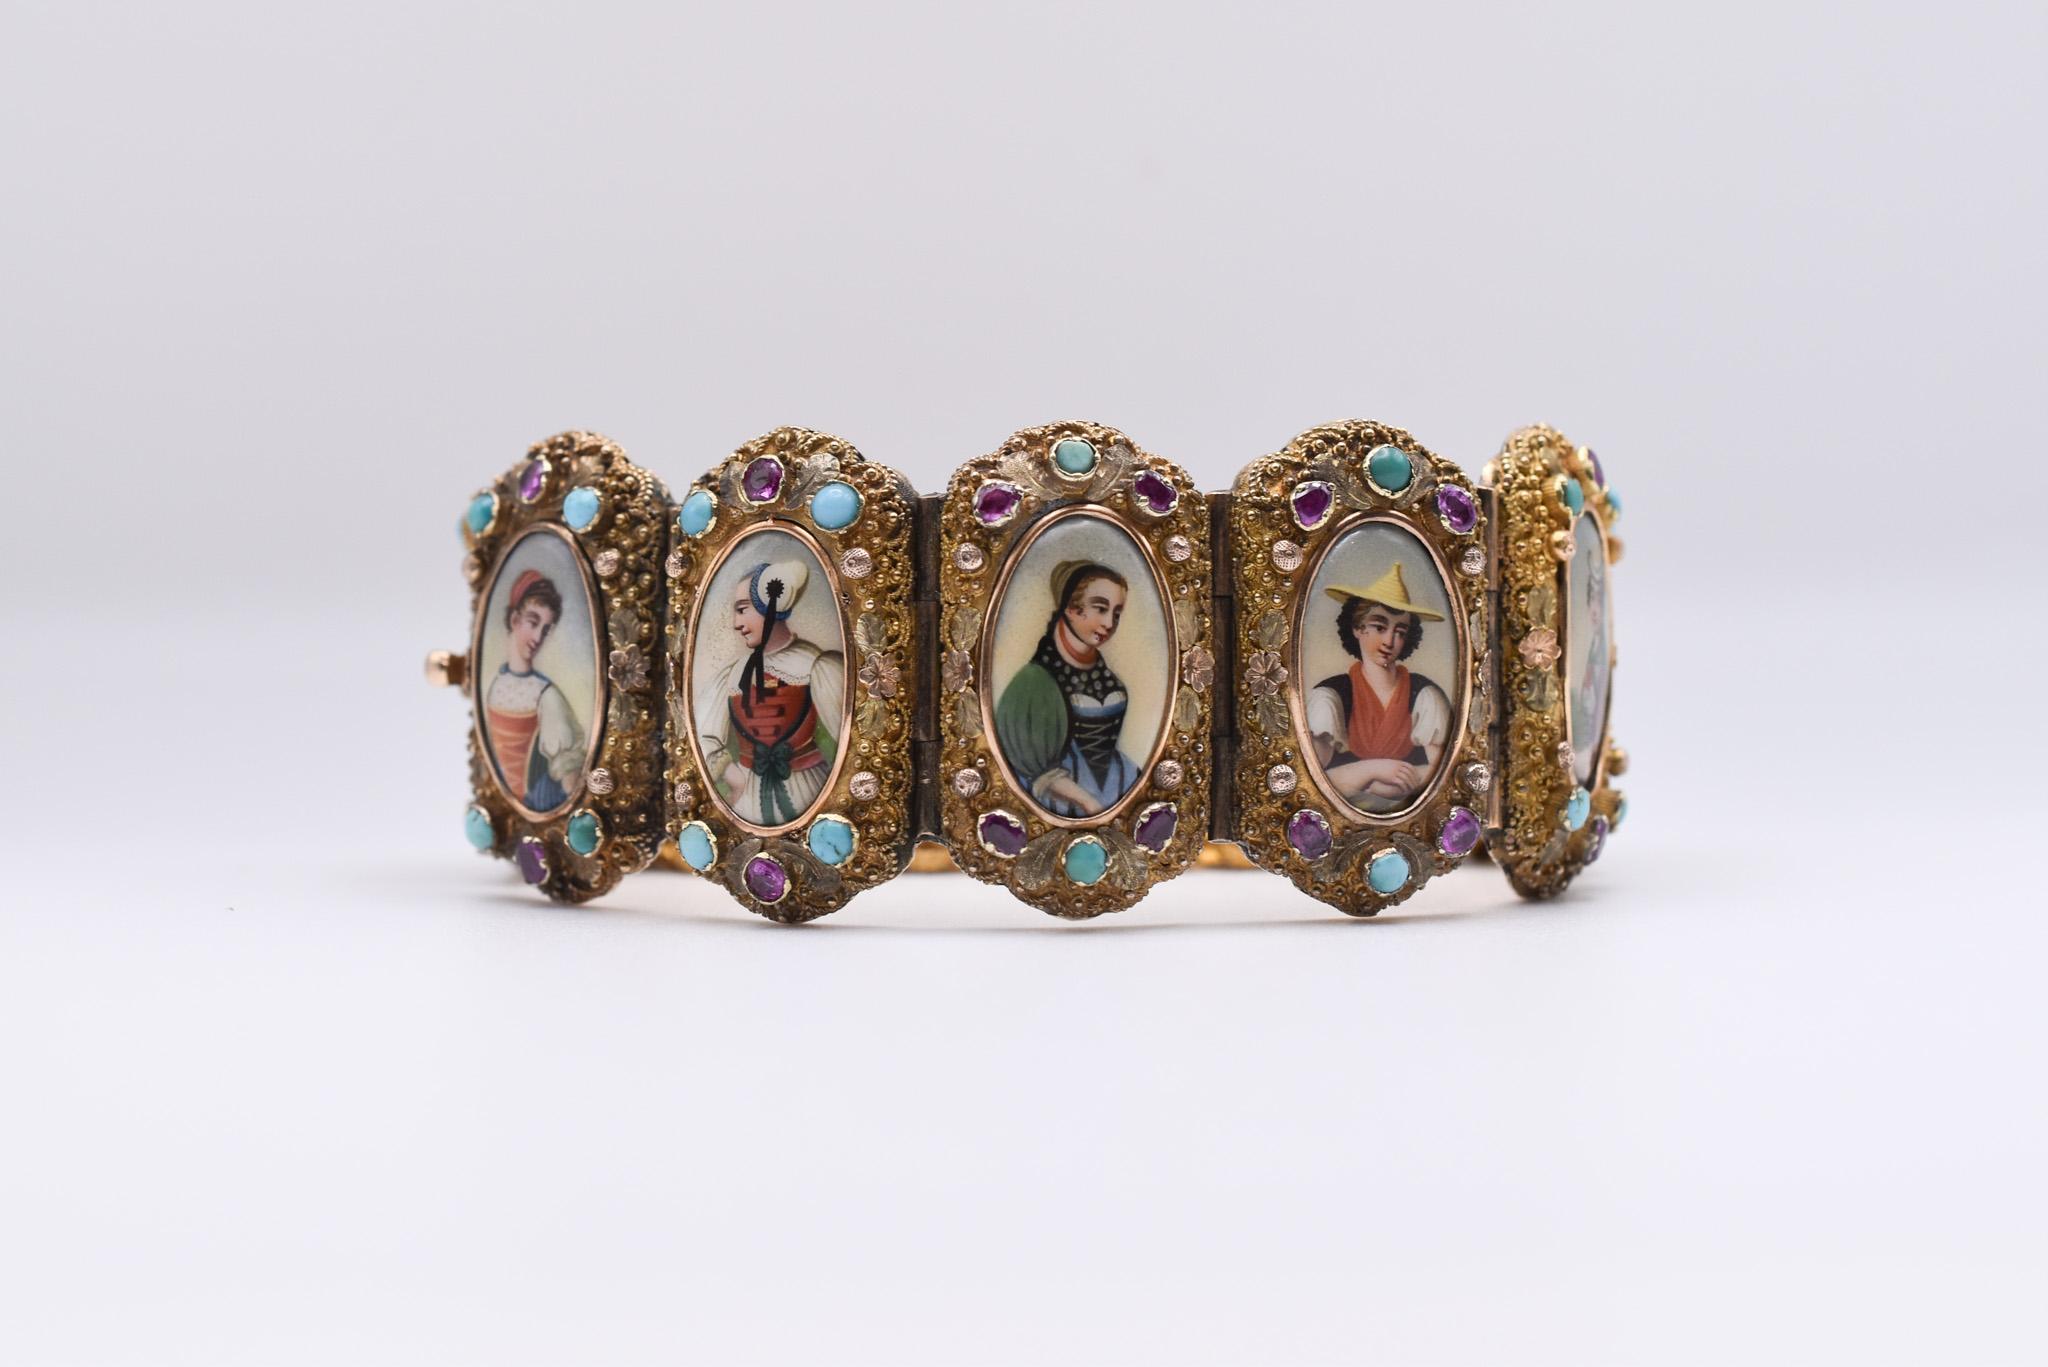 Ein exquisites antikes Armband aus 18-karätigem Gelbgold mit Rubin-, Türkis- und Porzellaneinsätzen, die die Schweizer Kantone darstellen. Hergestellt in der Schweiz, um 1890.